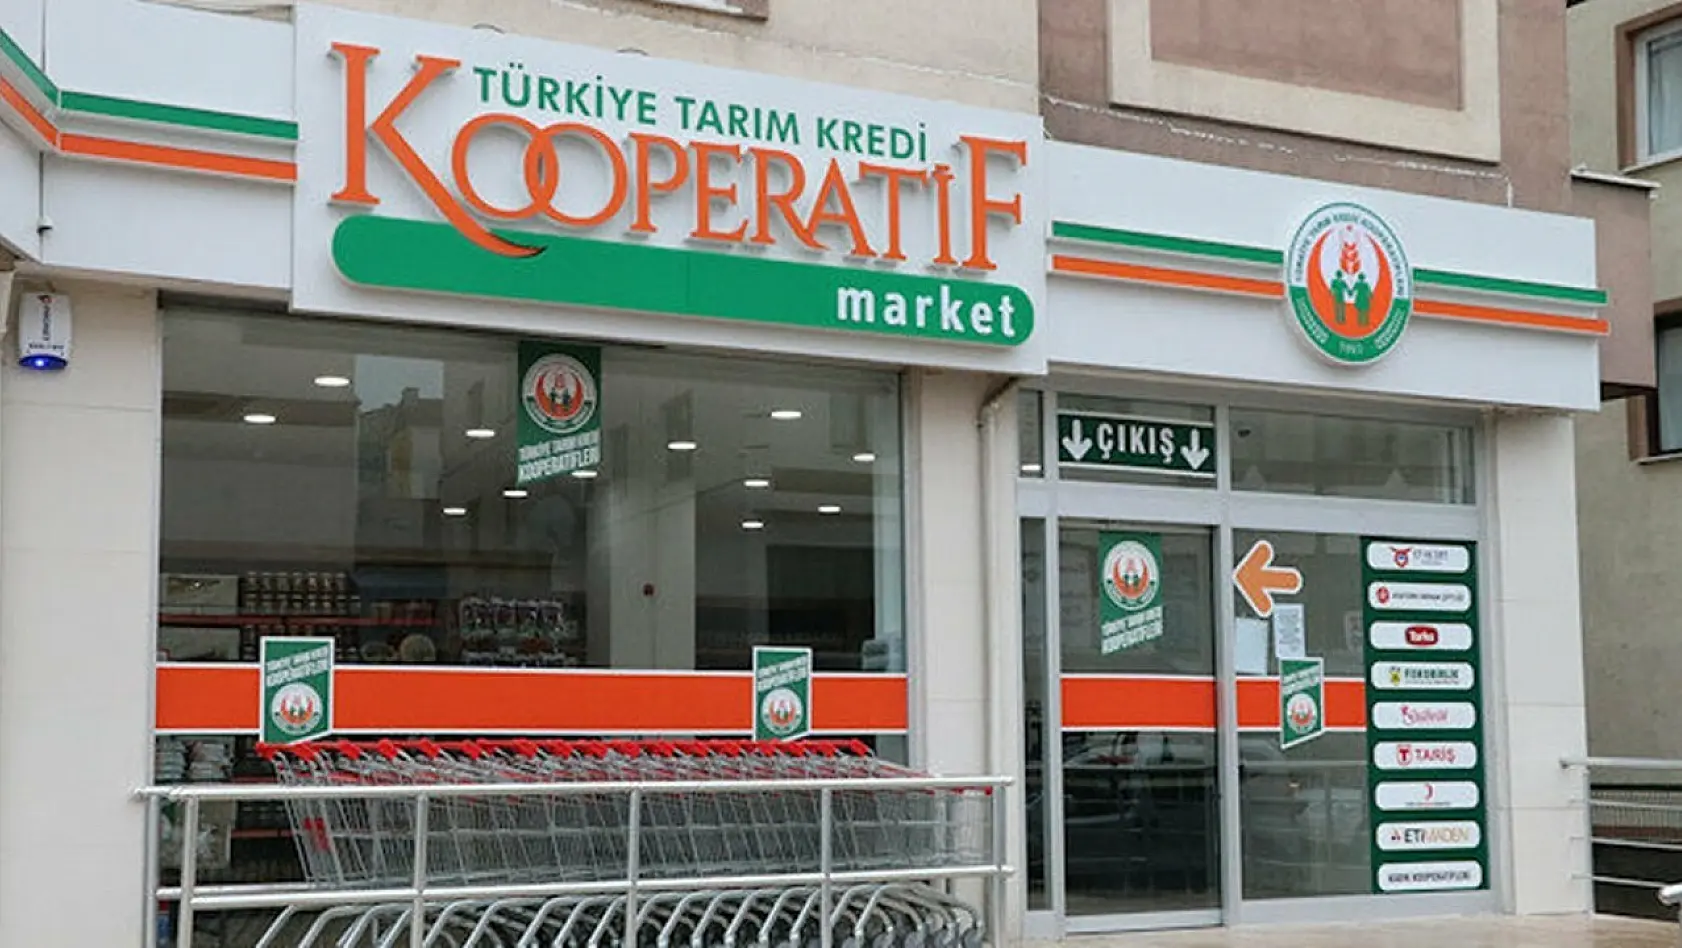 Elazığ'da Tarım Kredi Kooperatif Marketleri dev indirim günlerini başladı: Son 5 günü kaldı! Uğramayan pişman olacak